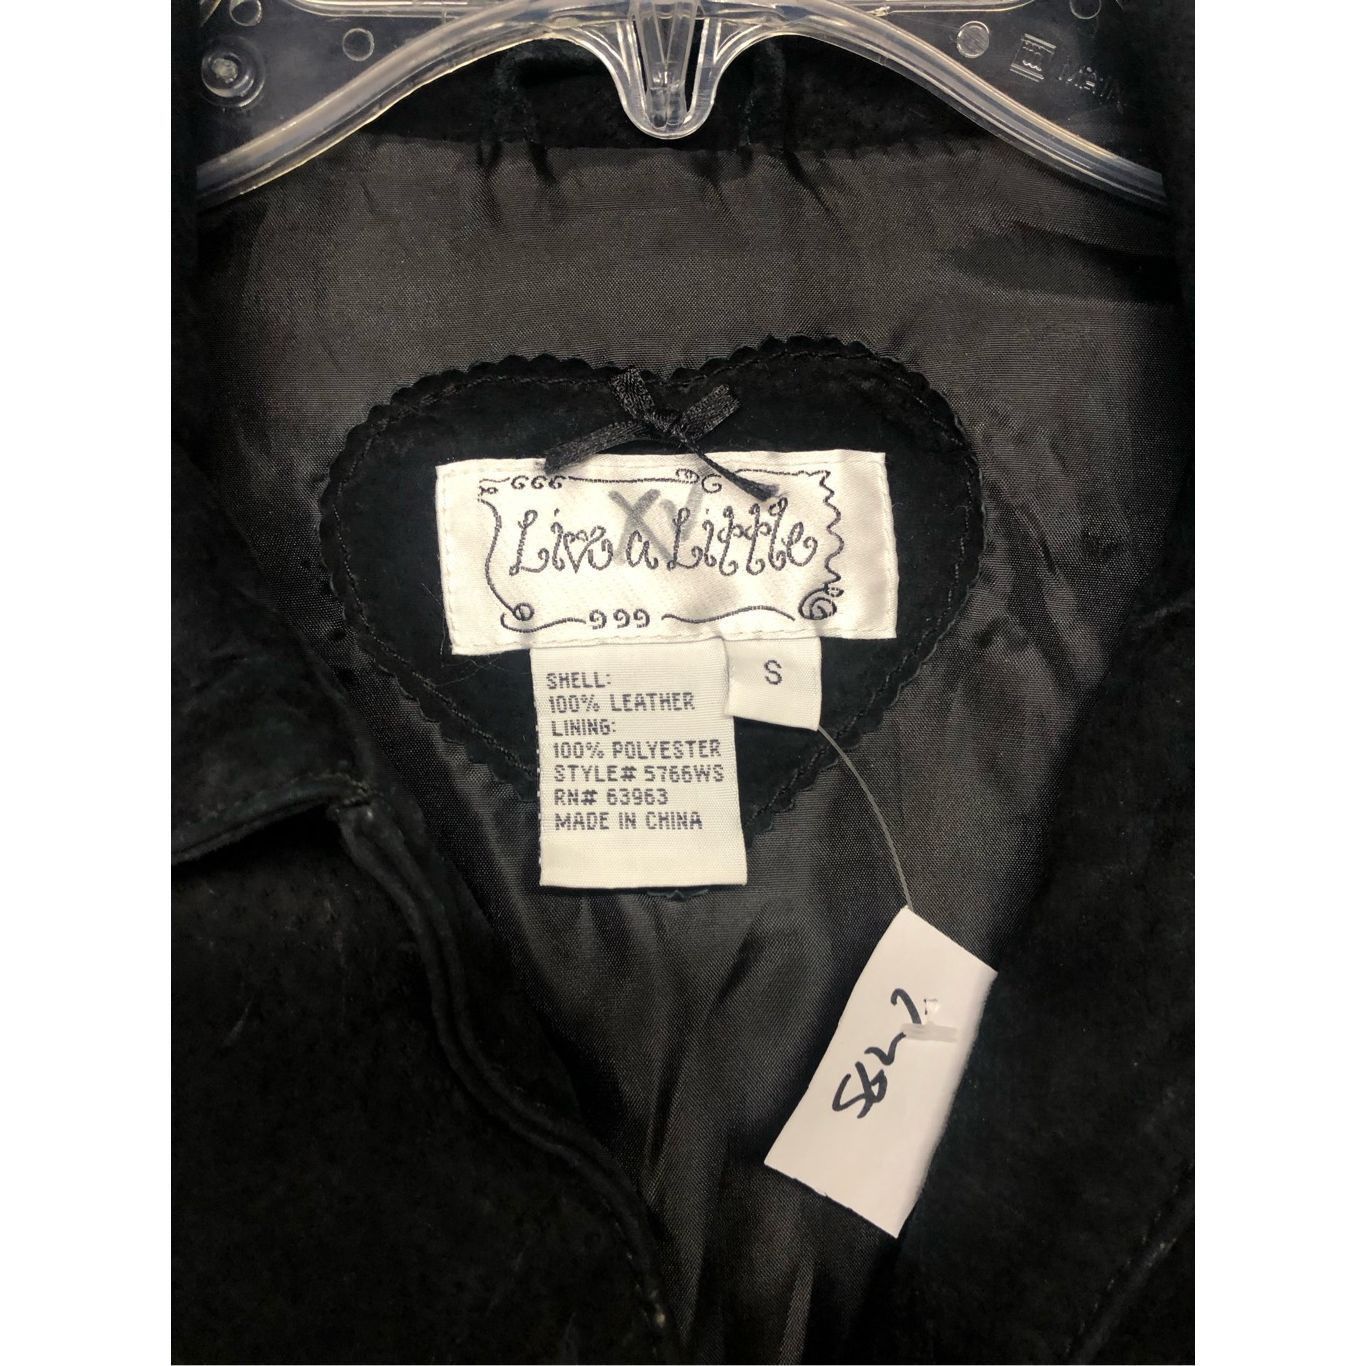 A-Line Live a Little Black 100% Leather Button Jacket Women's Size Size S / US 4 / IT 40 - 3 Thumbnail